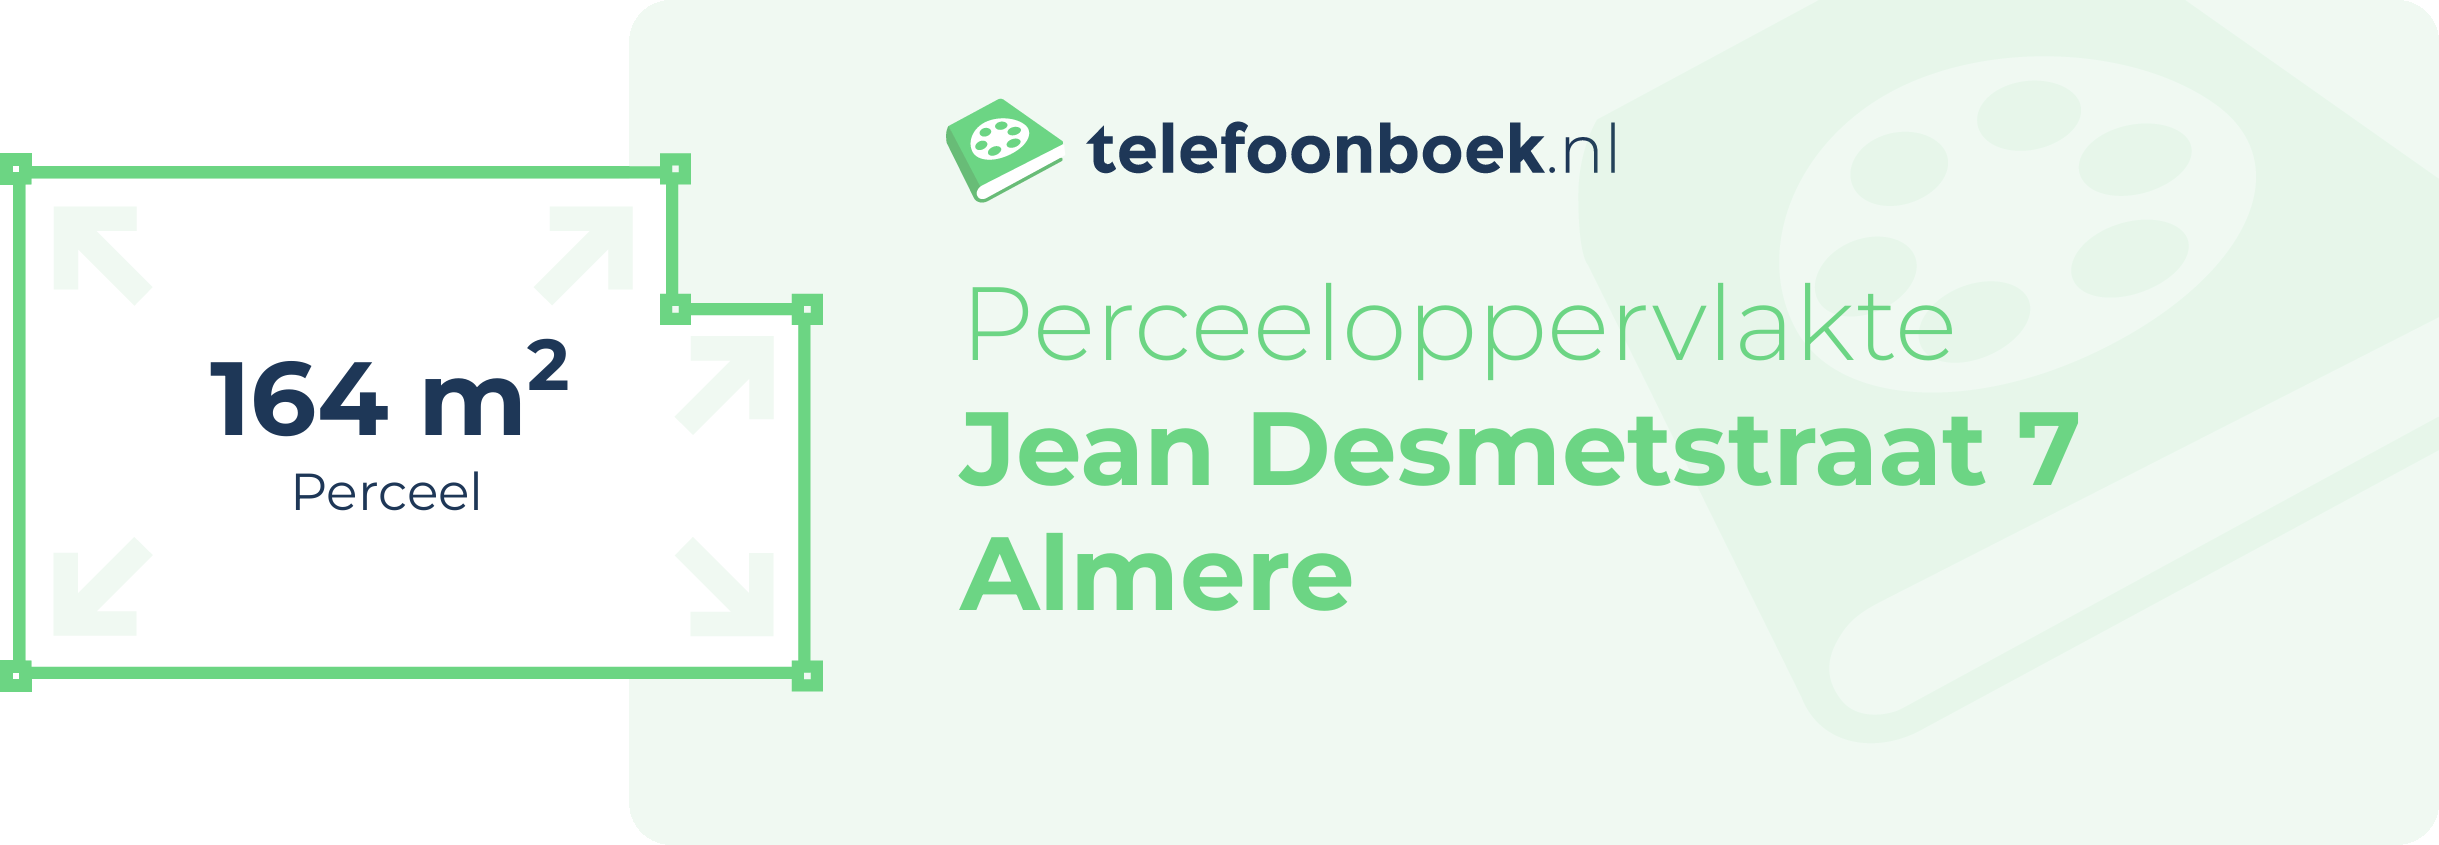 Perceeloppervlakte Jean Desmetstraat 7 Almere